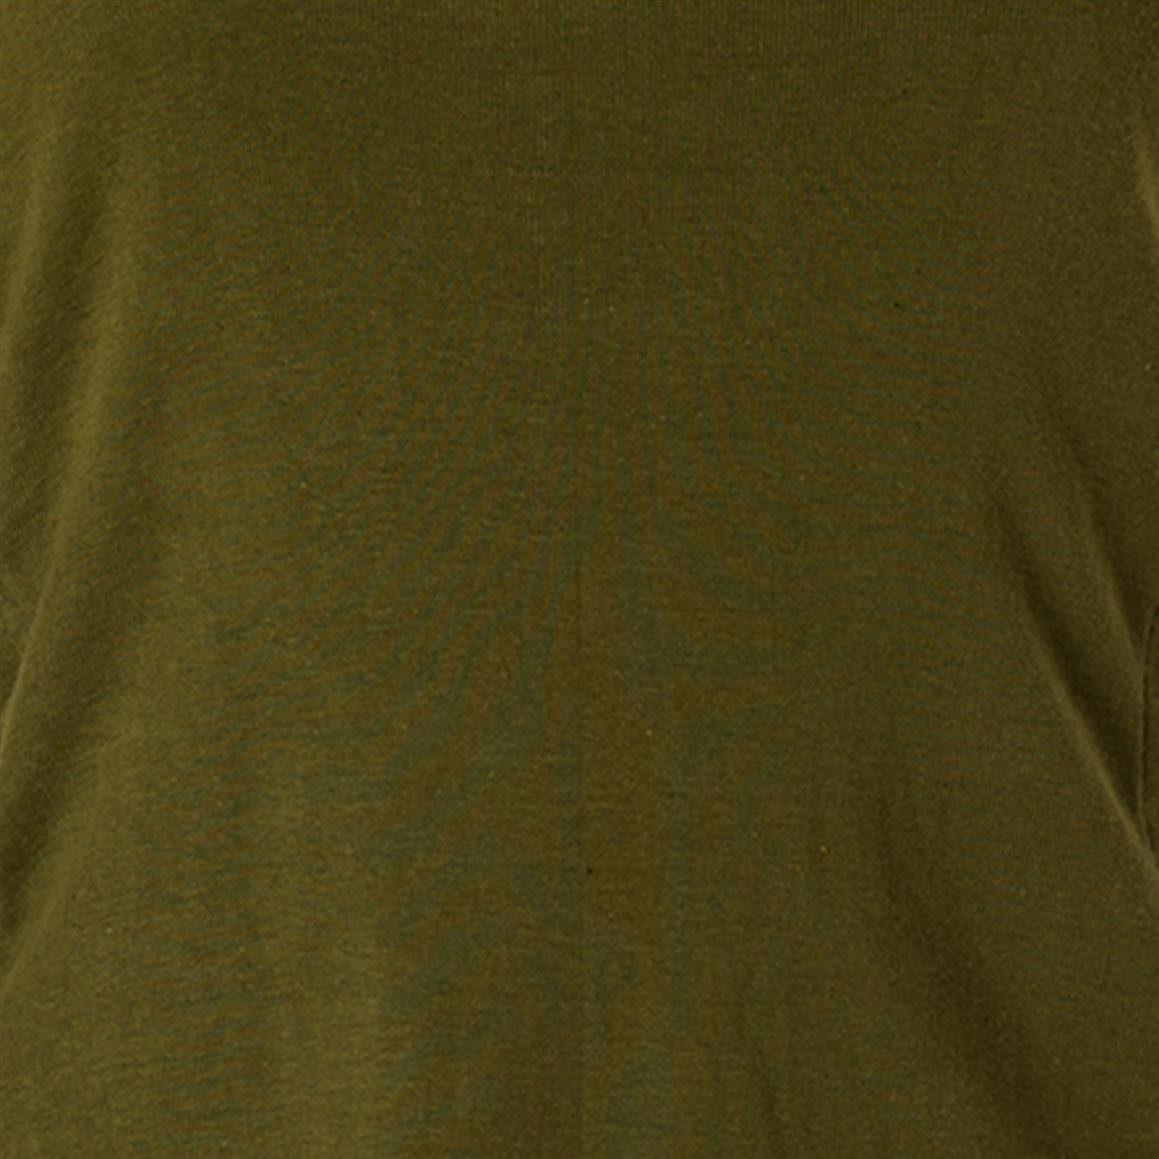 Vishes Kapuzenshirt Elfenshirt und Schnüren Bändern Style zum Gothik Hoody, olive Zipfelkapuze Ethno